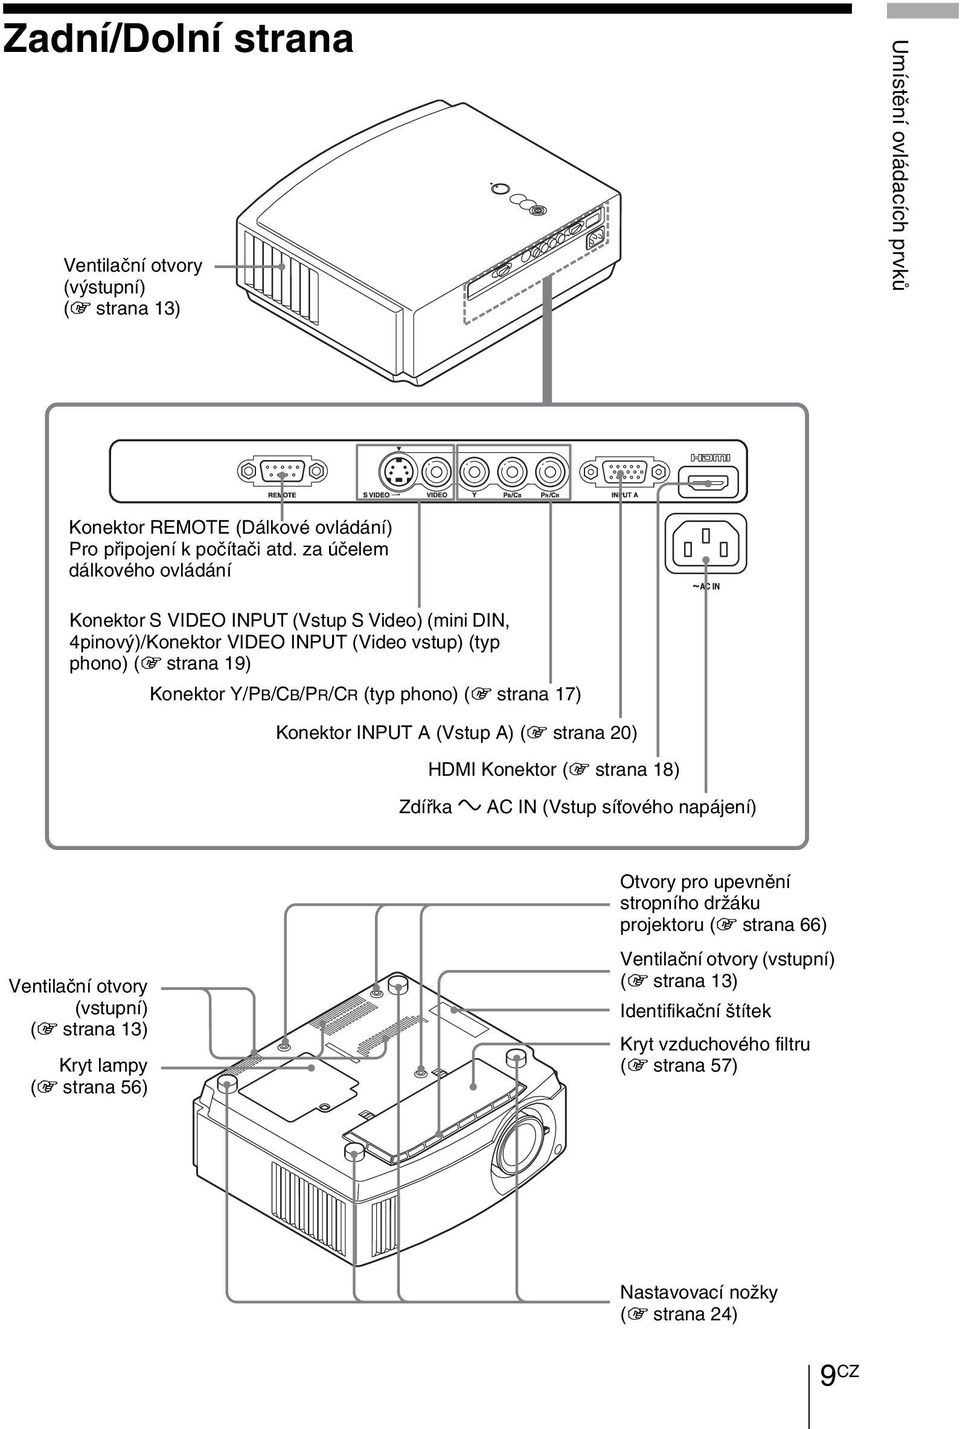 phono) (1 strana 17) Konektor INPUT A (Vstup A) (1 strana 20) HDMI Konektor (1 strana 18) Zdířka - AC IN (Vstup síťového napájení) Ventilační otvory (vstupní) (1 strana 13) Kryt